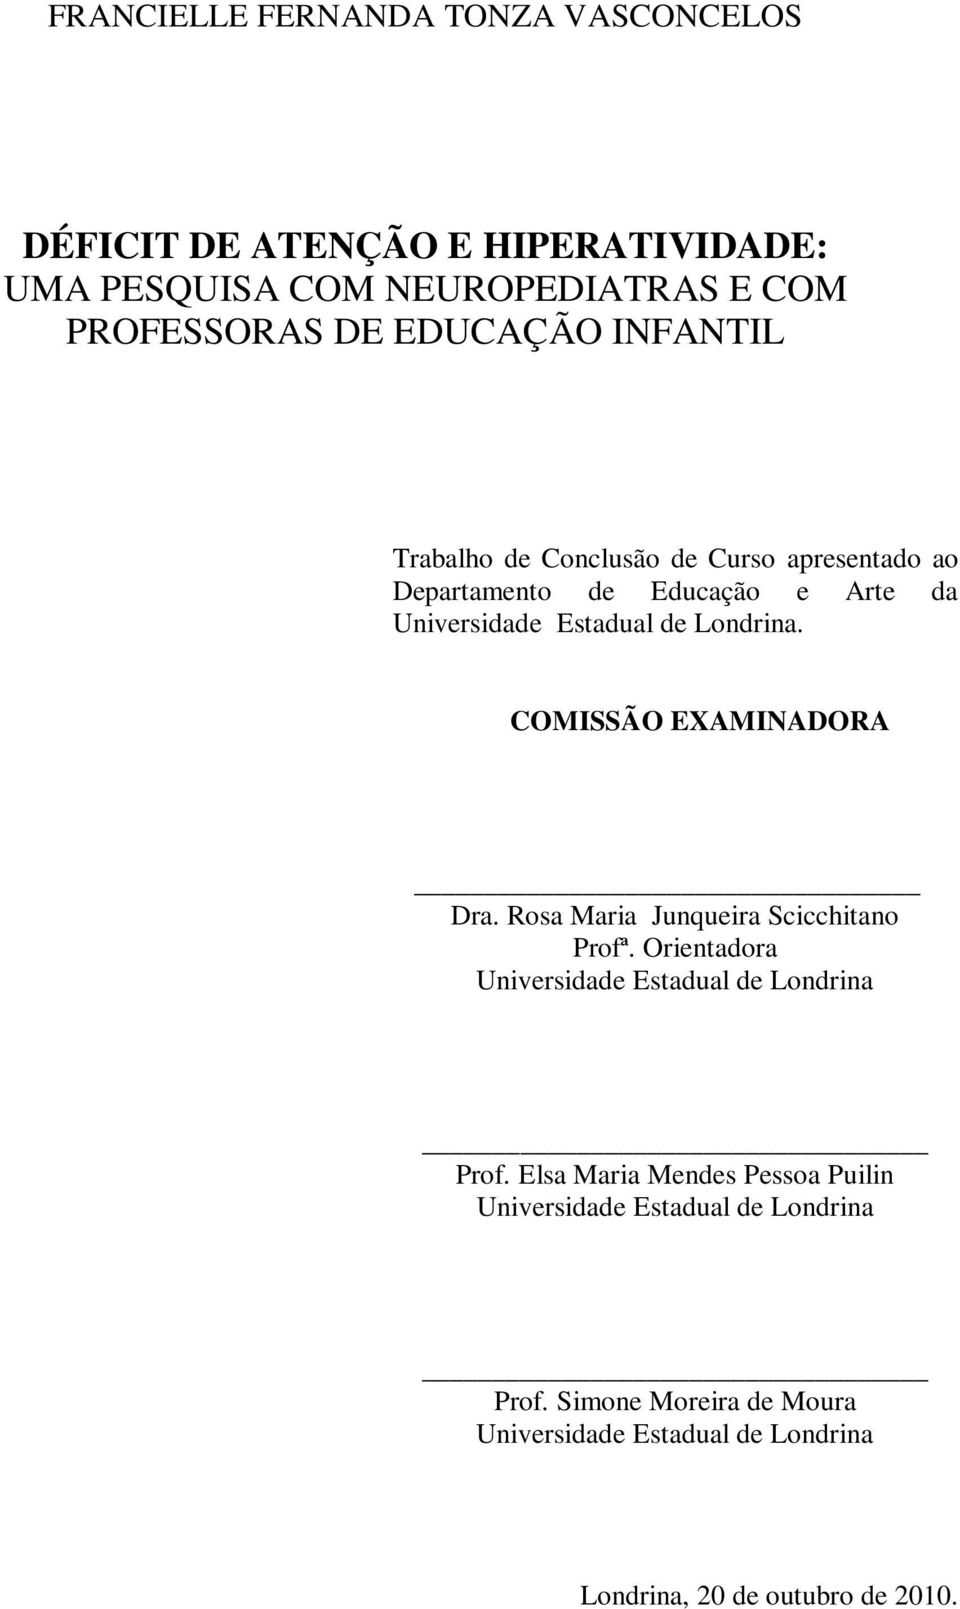 COMISSÃO EXAMINADORA Dra. Rosa Maria Junqueira Scicchitano Profª. Orientadora Universidade Estadual de Londrina Prof.